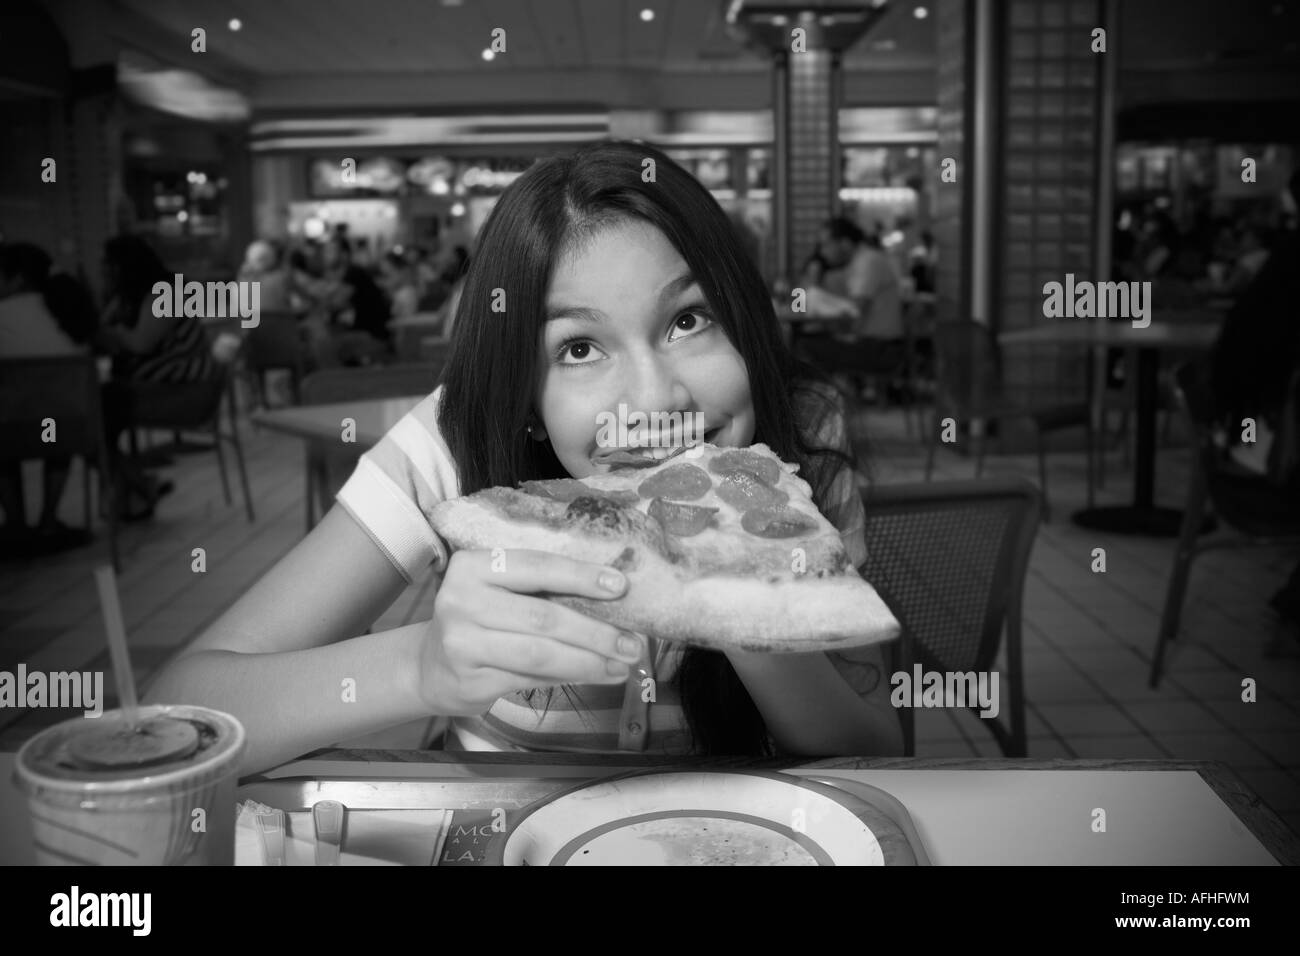 Ragazza adolescente mangiare la pizza nel food court Foto Stock